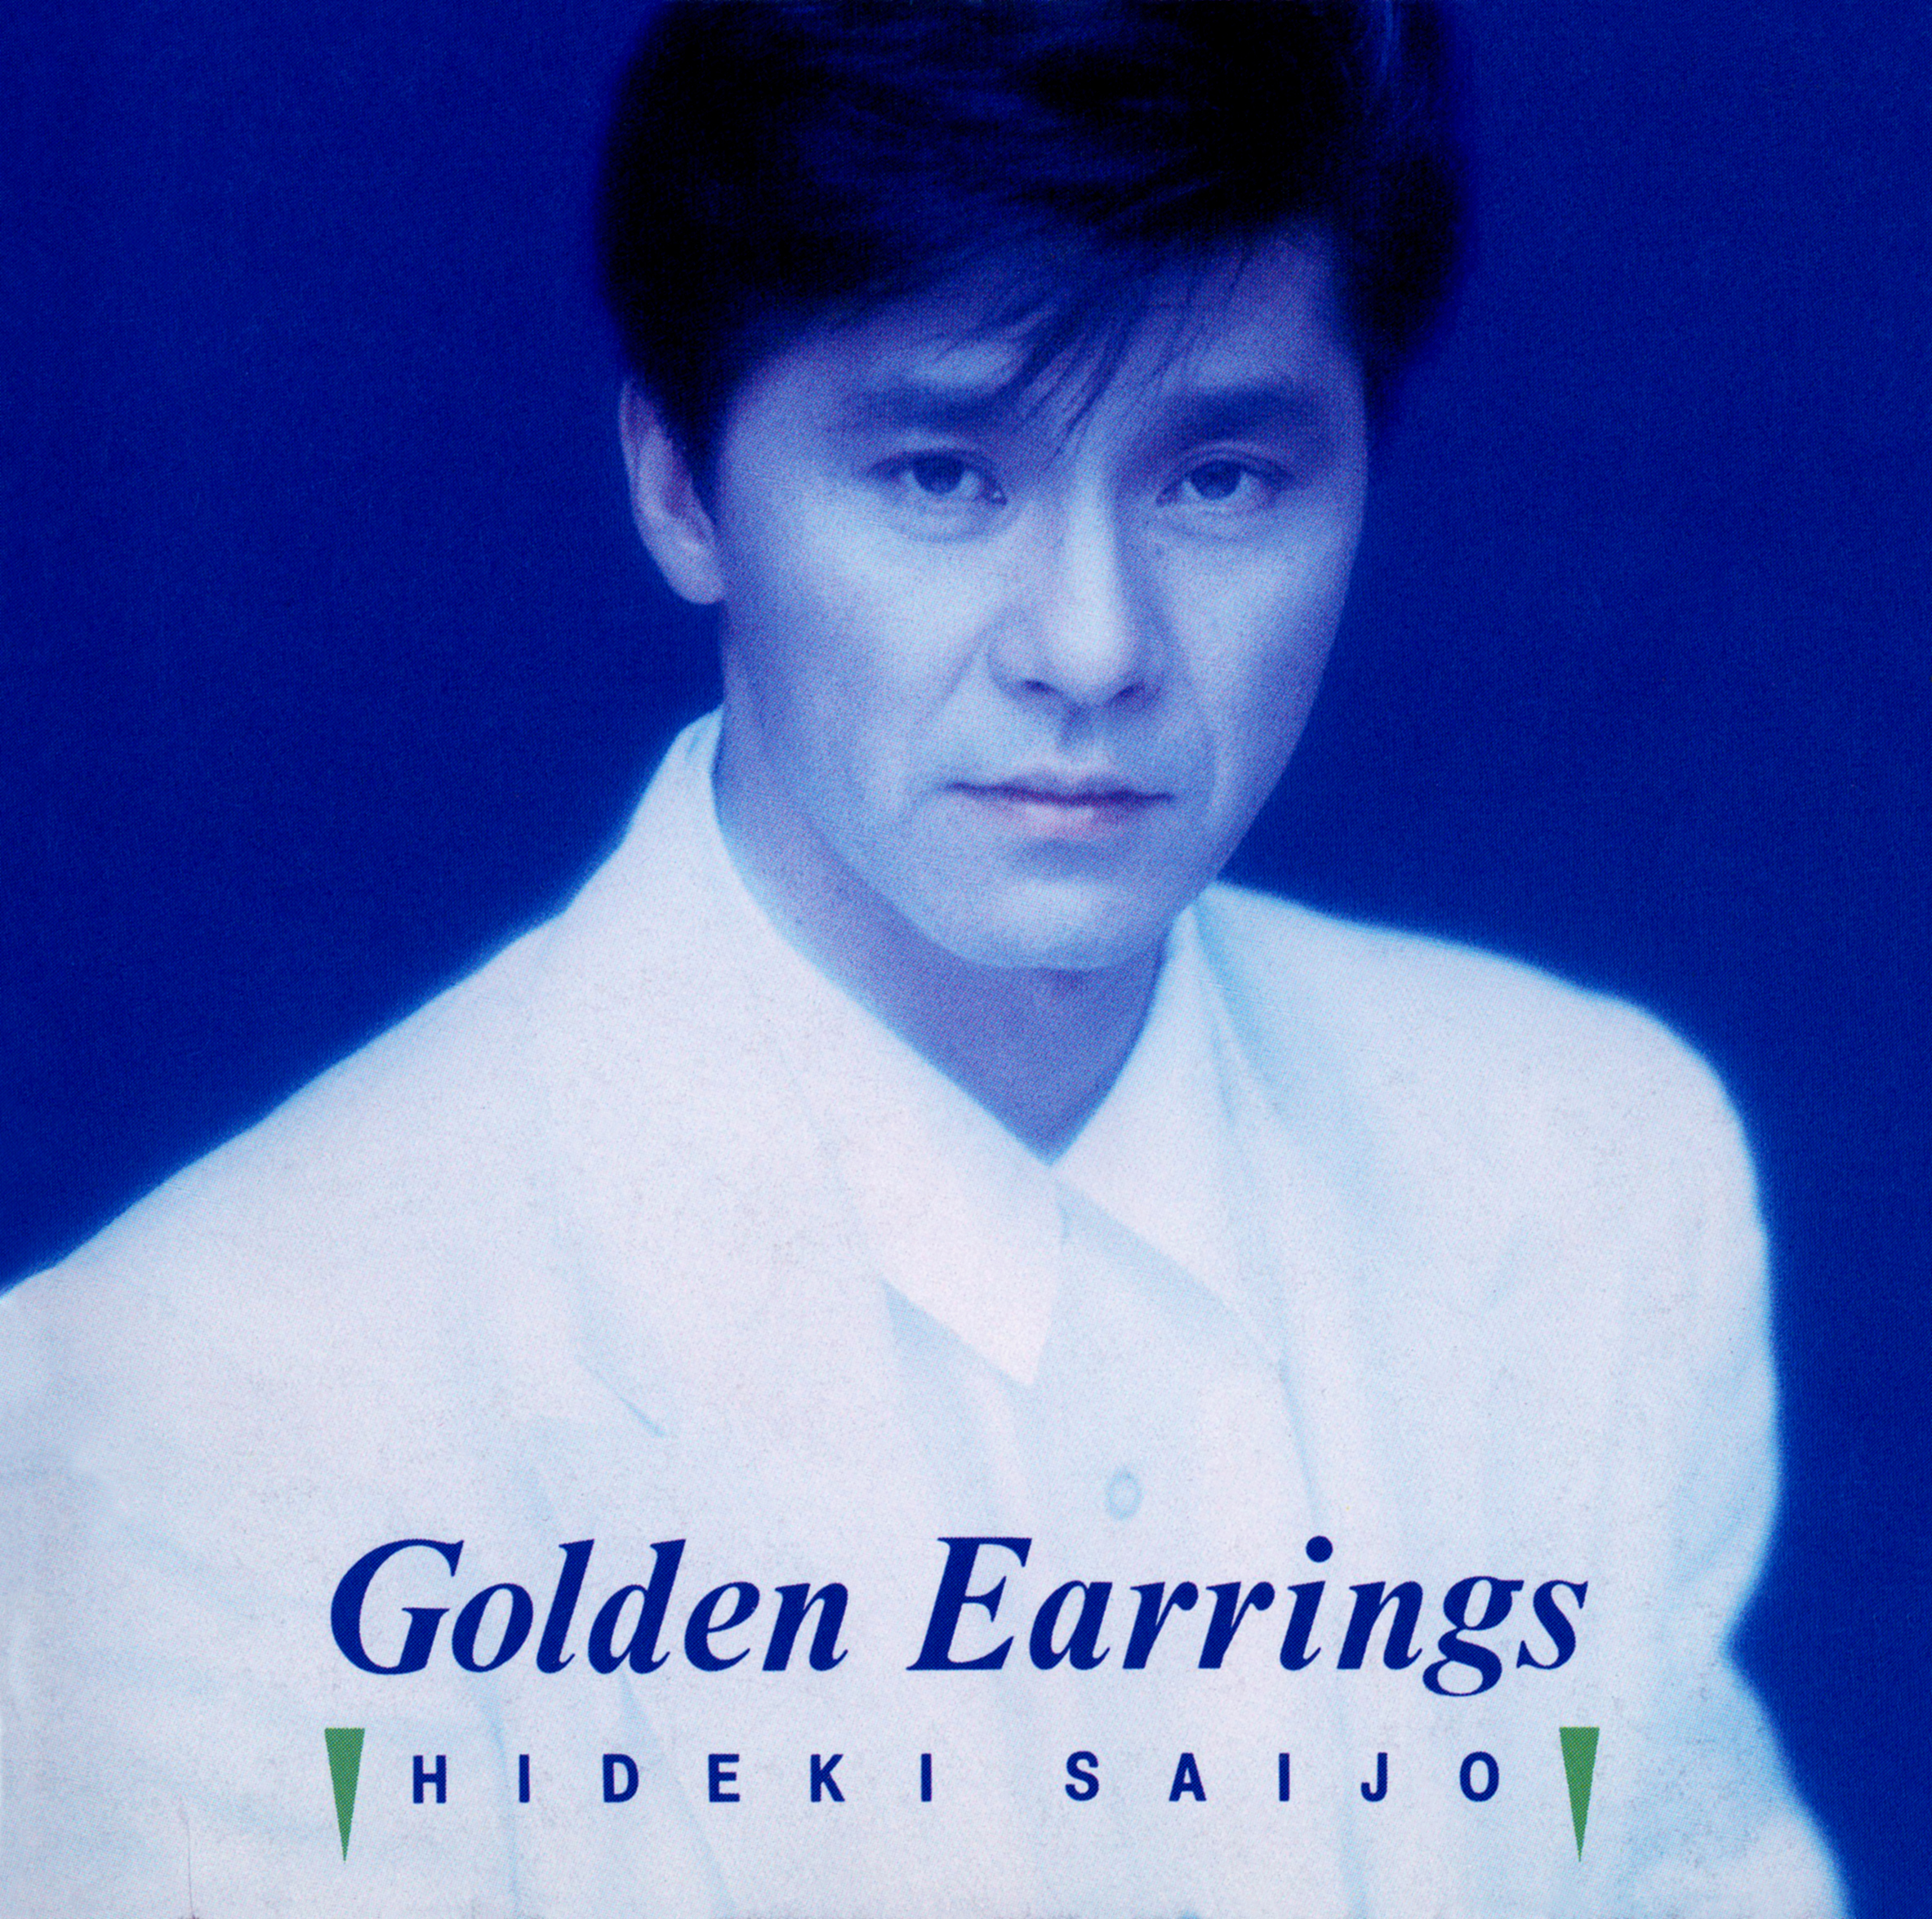 西城秀樹 22ndアルバム『Golden Earrings (ゴールデン・イヤリング)』(1989年7月21日発売) 高画質CDジャケット画像